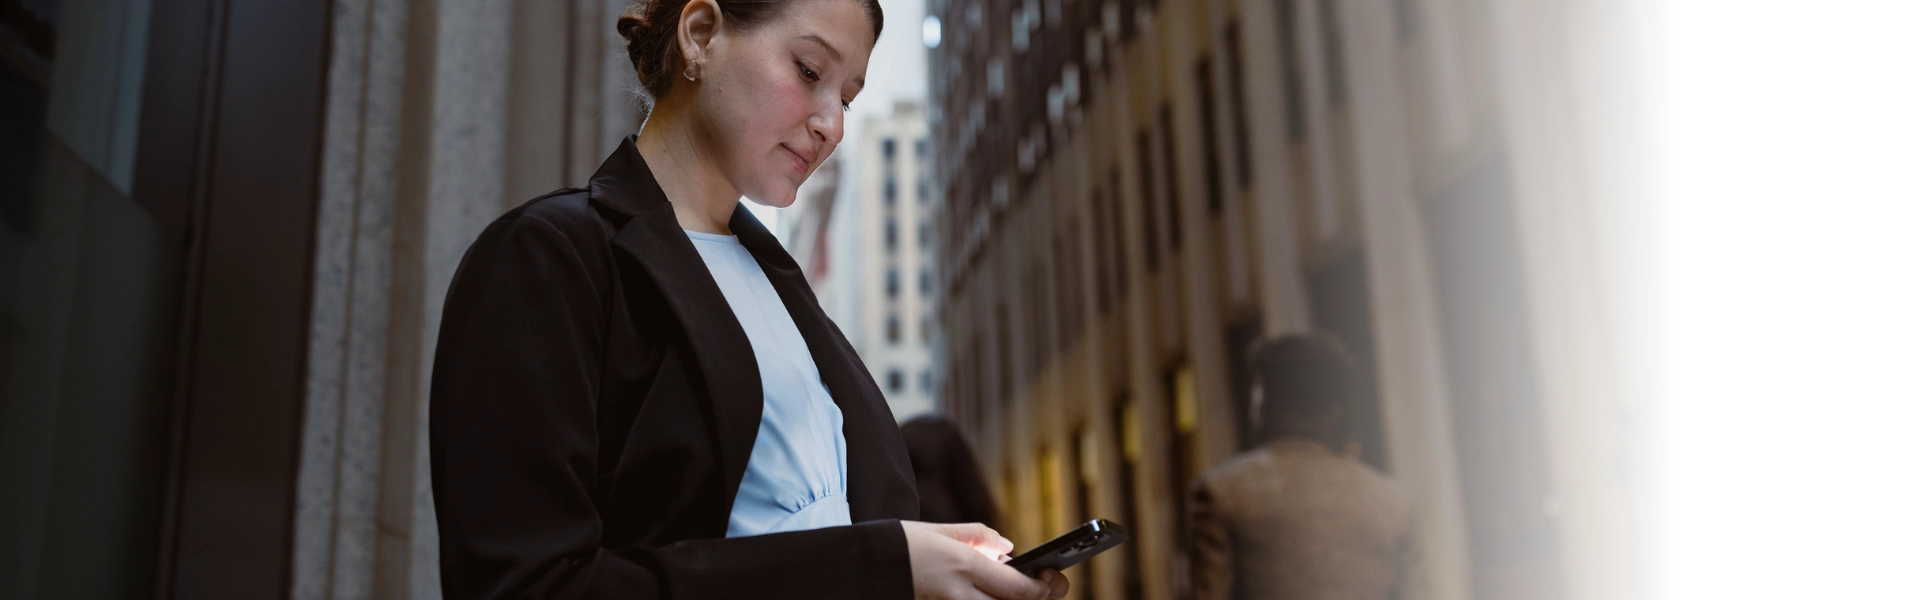 Mulher branca com roupa social a caminho da empresa confere notificações de seu celular